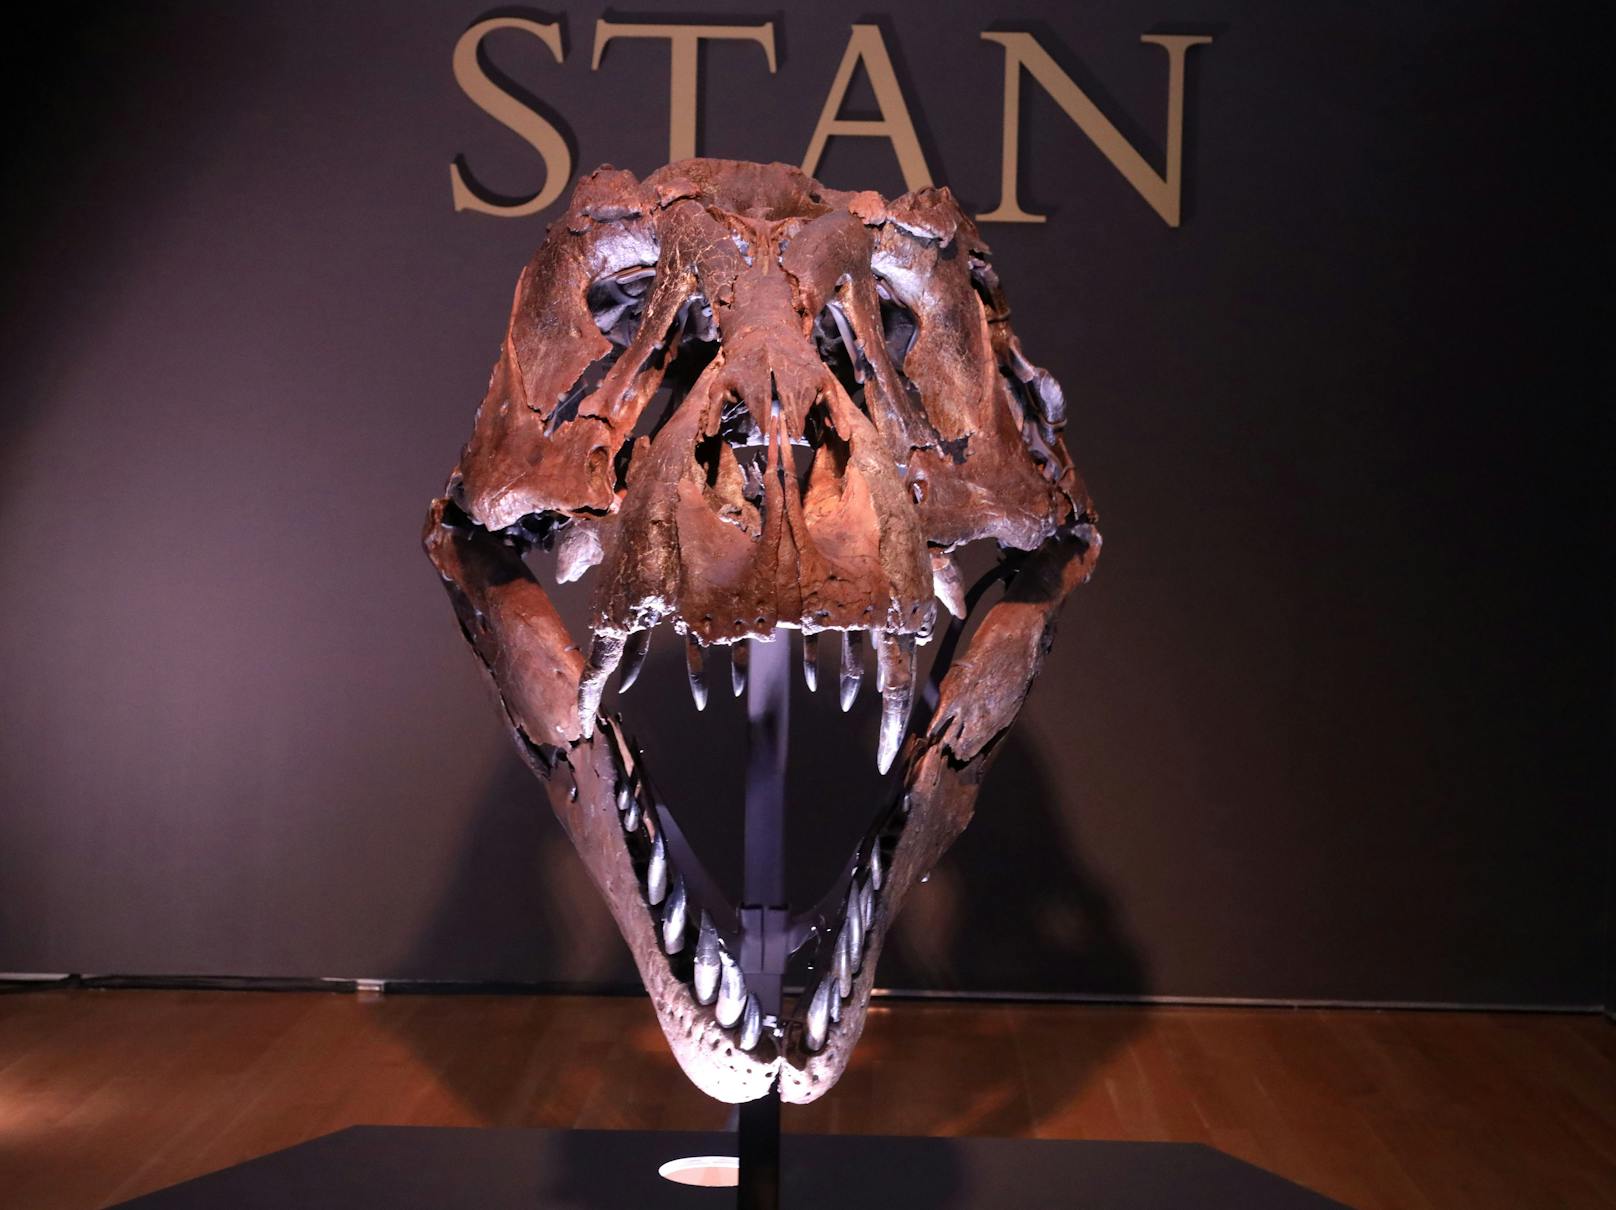 Bereits nach zwei Minuten wurden mehr als neun Millionen Dollar für eines der am besten erhaltenen Tyrannosaurus-Skelette der Welt geboten. Nach 14 Minuten waren nur noch drei Bieter im Rennen. Unter den Hammer kam "Stan" schließlich um 27,5 Millionen Dollar - plus weitere Kosten und Gebühren.<br>